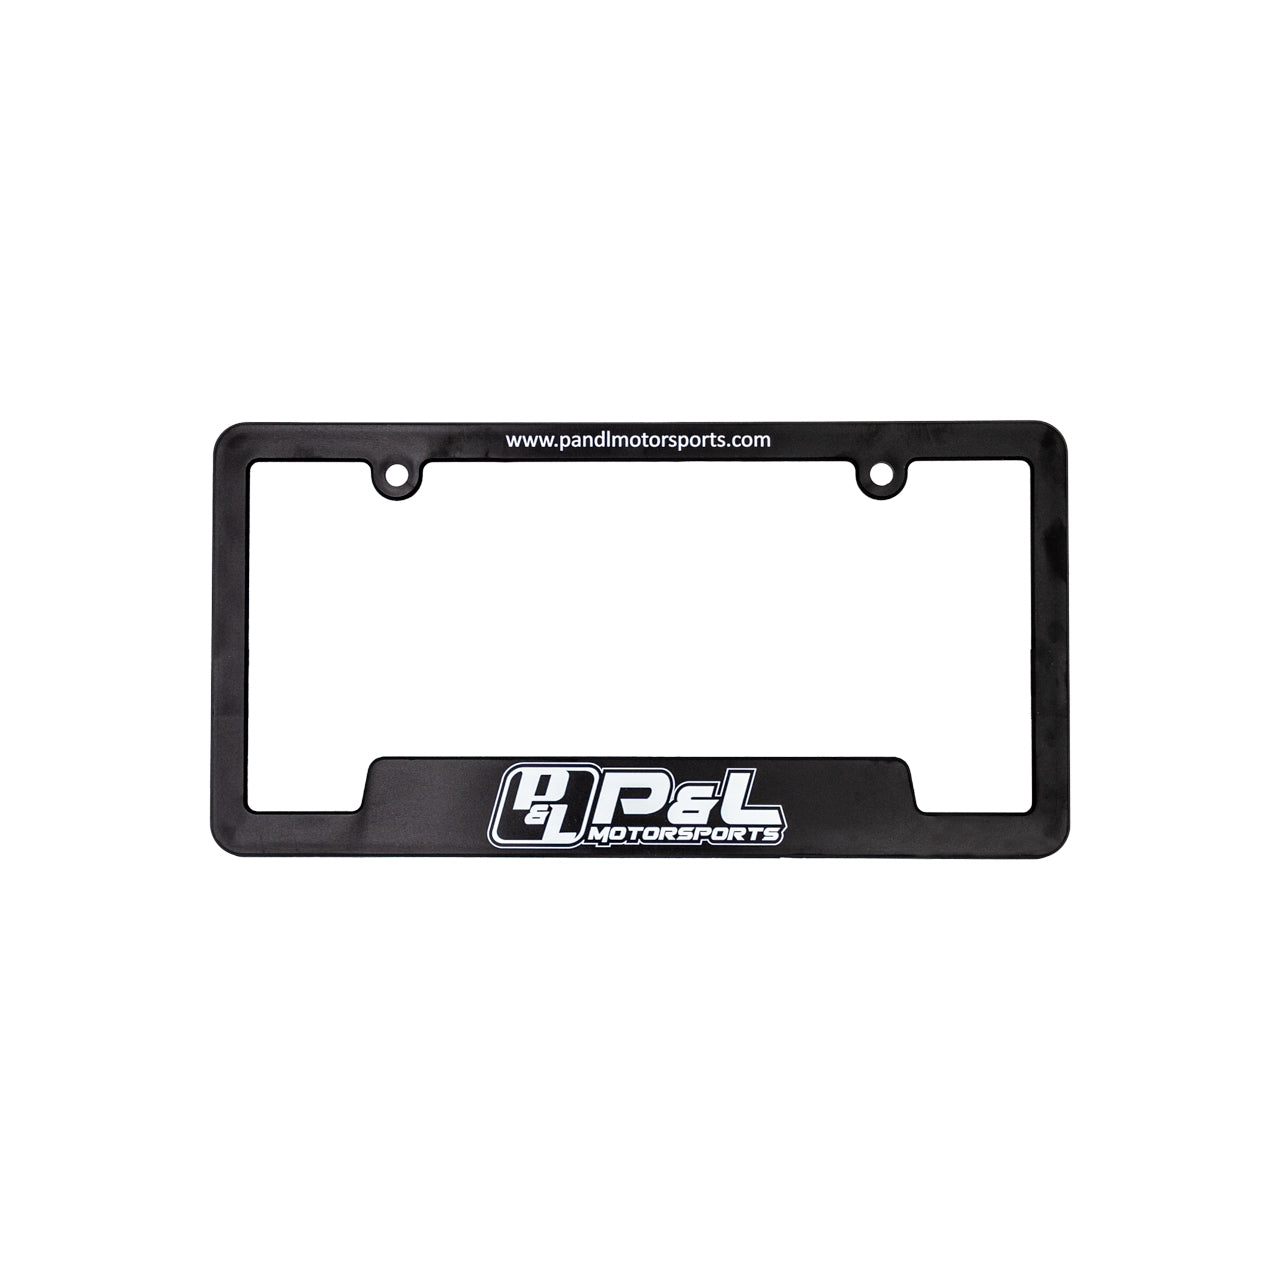 P&L Motorsports License Plate Frame